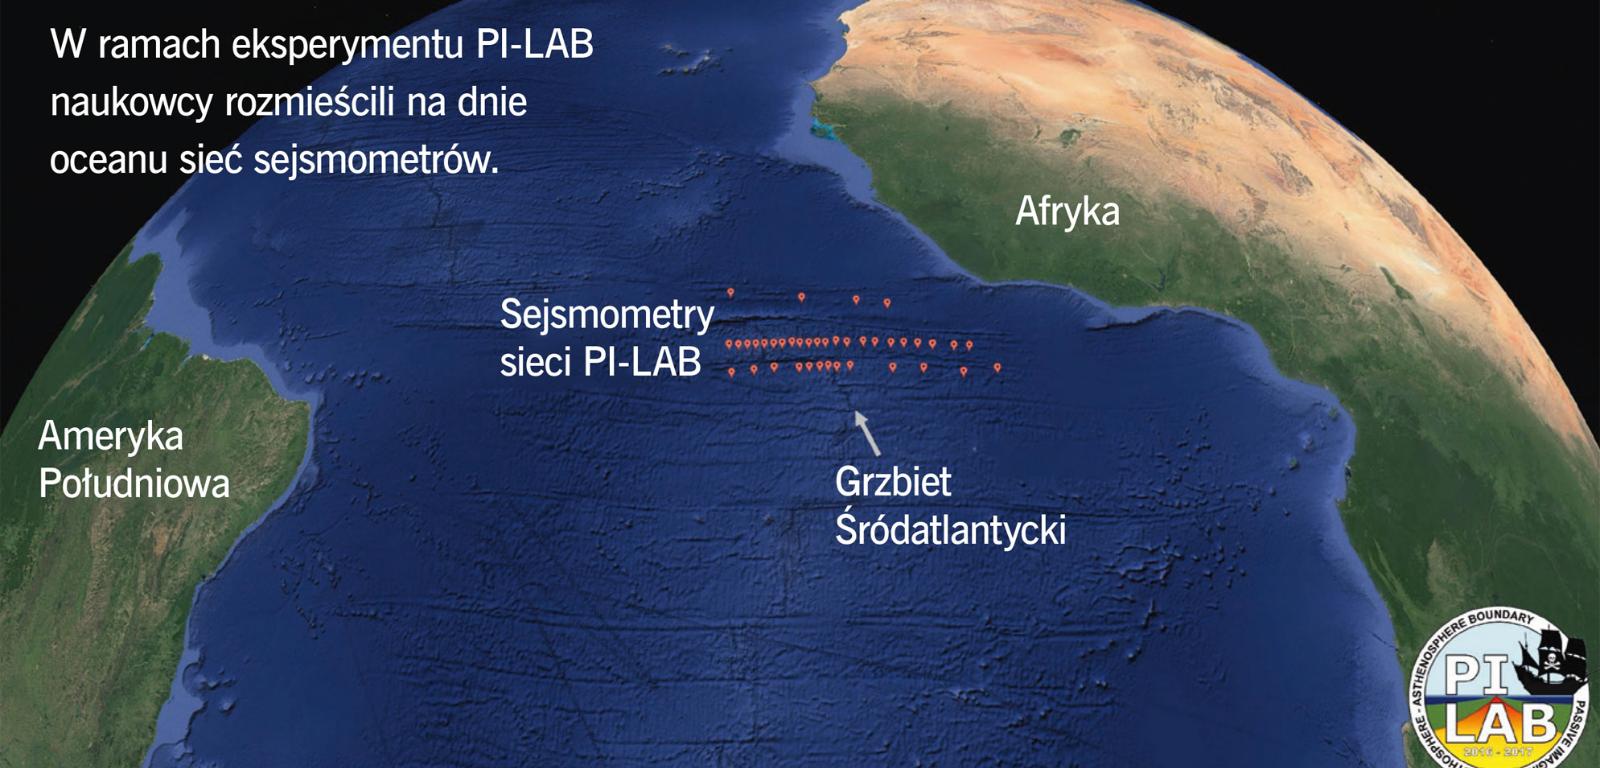 W ramach eksperymentu PI-LAB naukowcy rozmieścili na dnie oceanu sieć sejsmometrów.